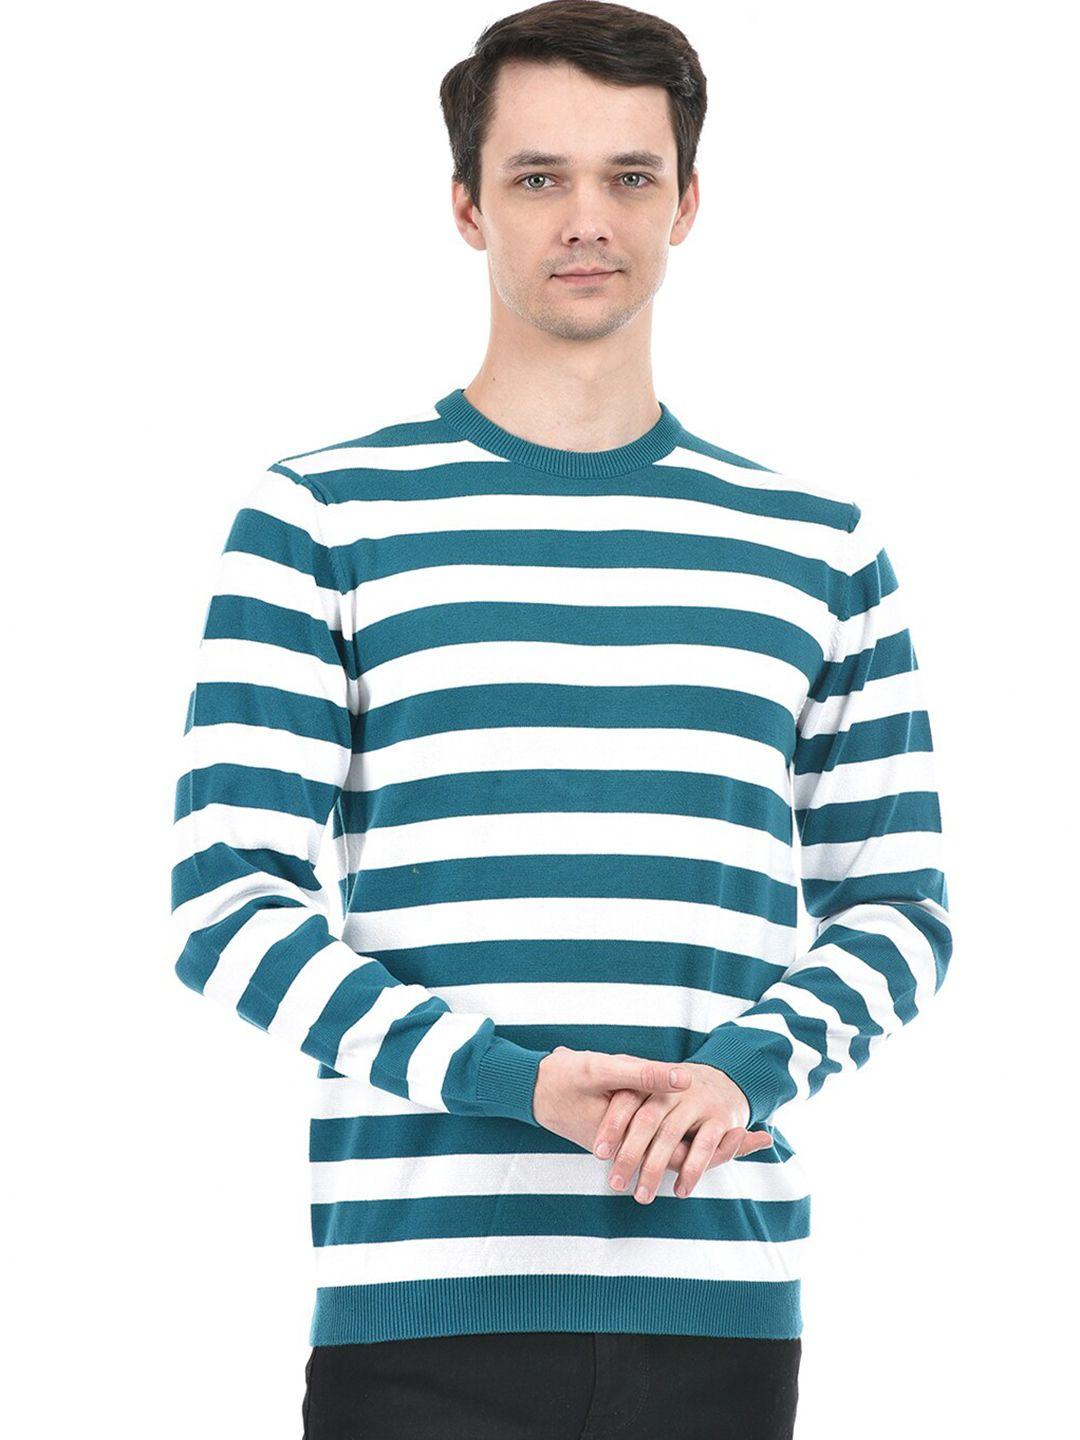 integriti men striped pullover